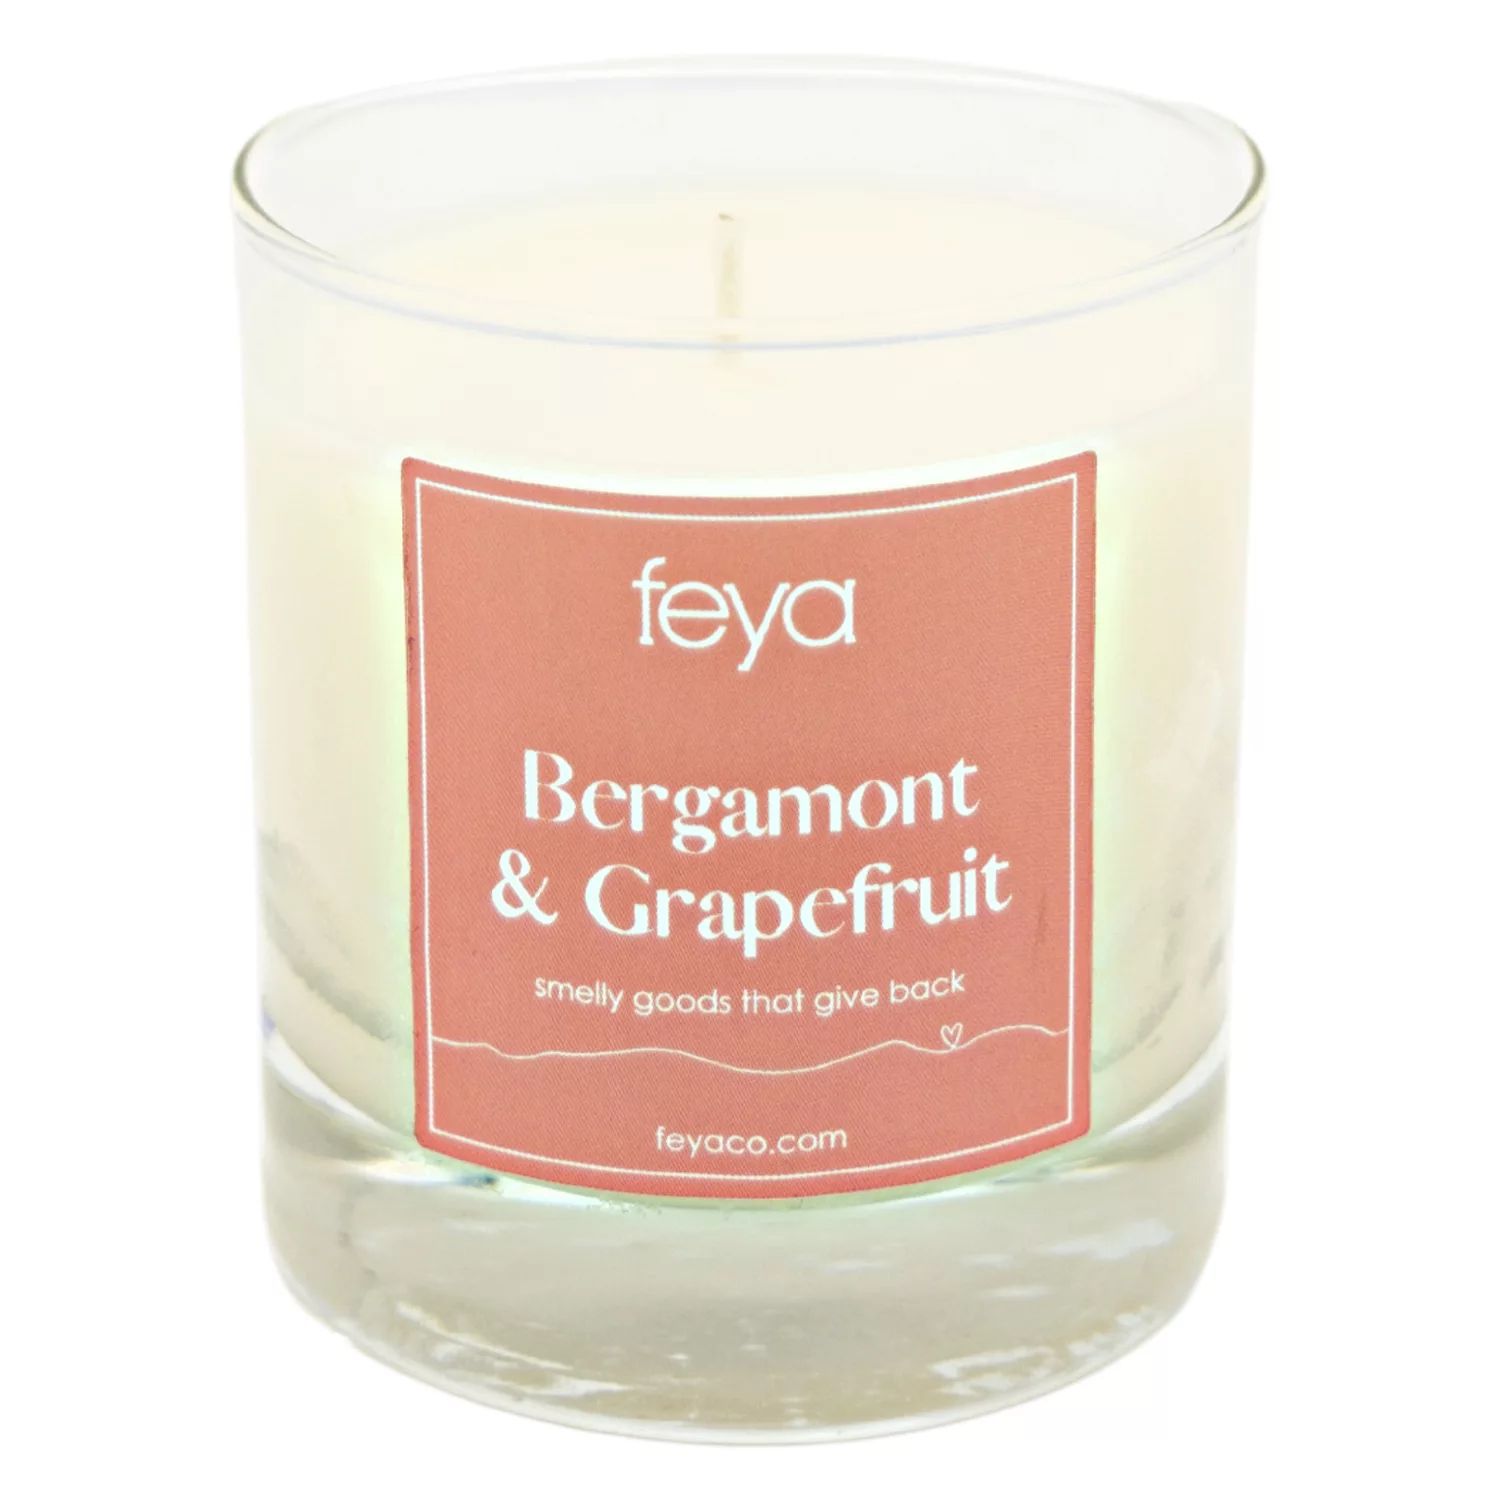 Свечи Feya с бергамотом и грейпфрутом, 6,5 унций. Соевая свеча